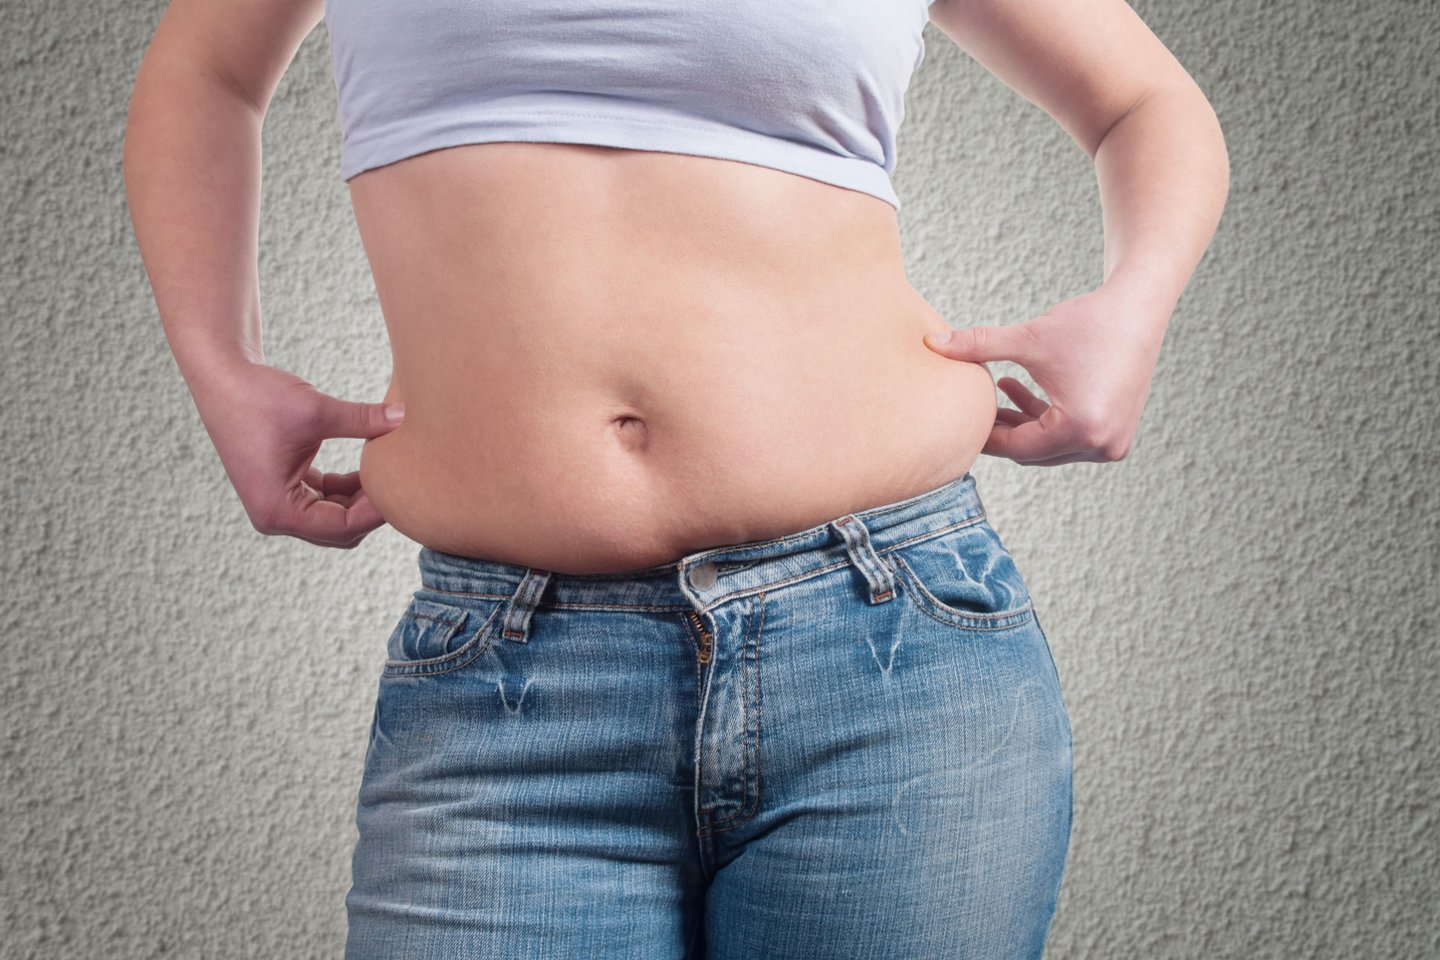 alicia raktai numesti svorio riebalų praradimas pilvo srityje